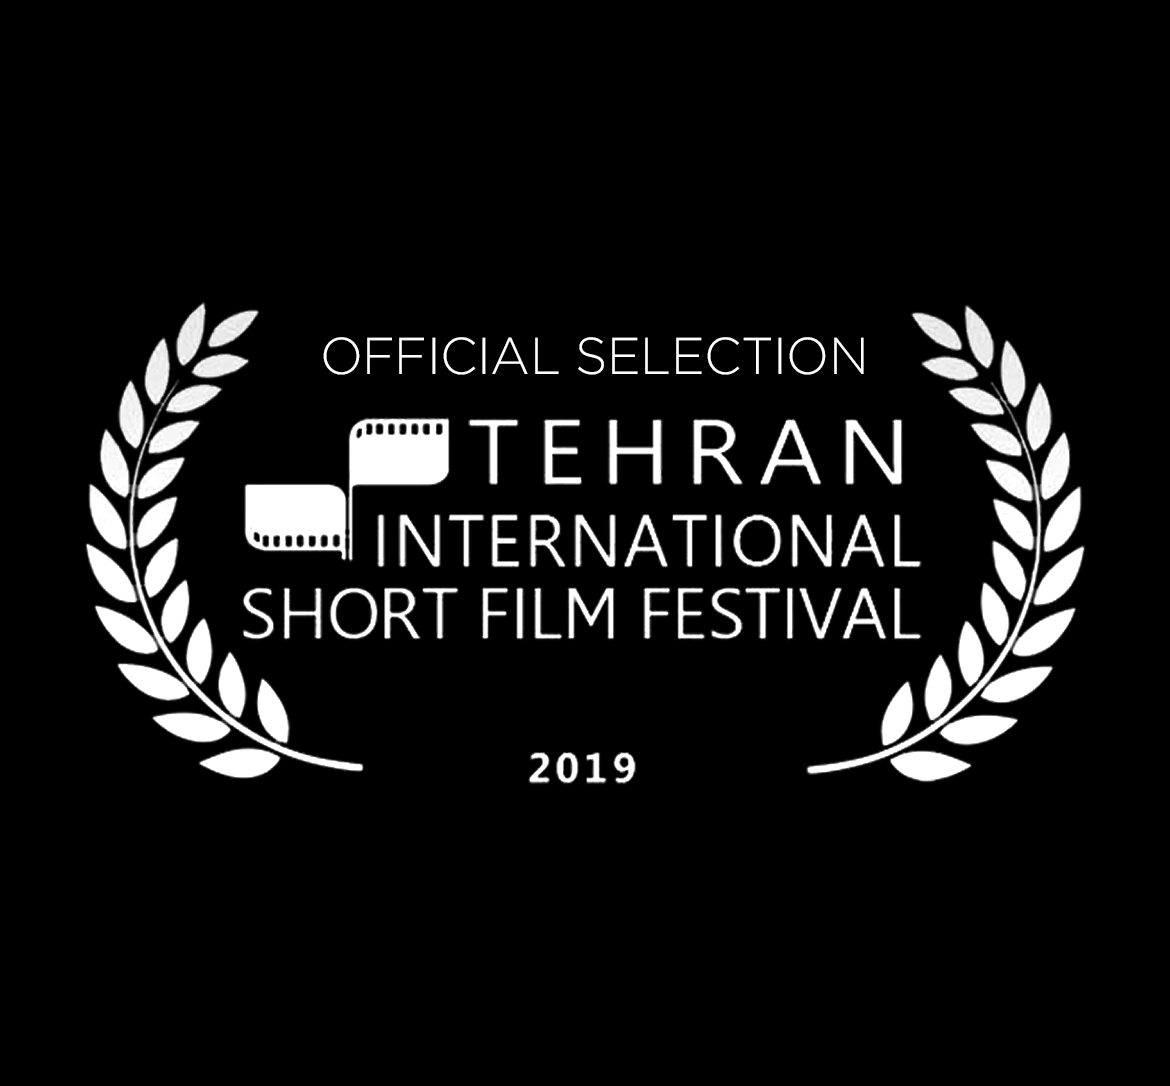 Tehran International Short Film Festival